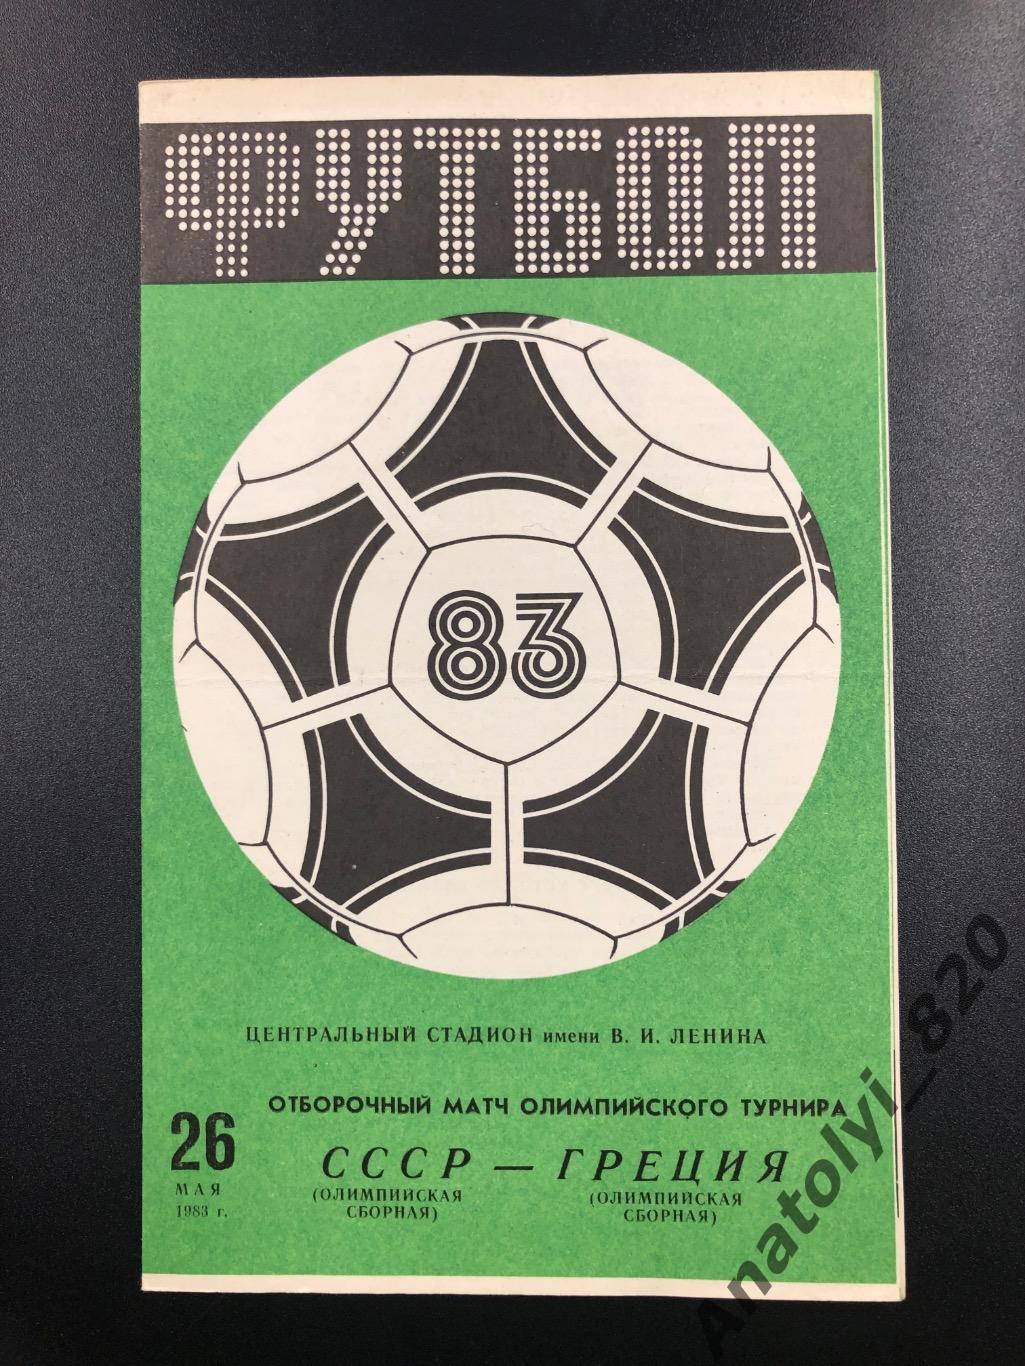 Сборная СССР - сборная Греции, 26.05.1983